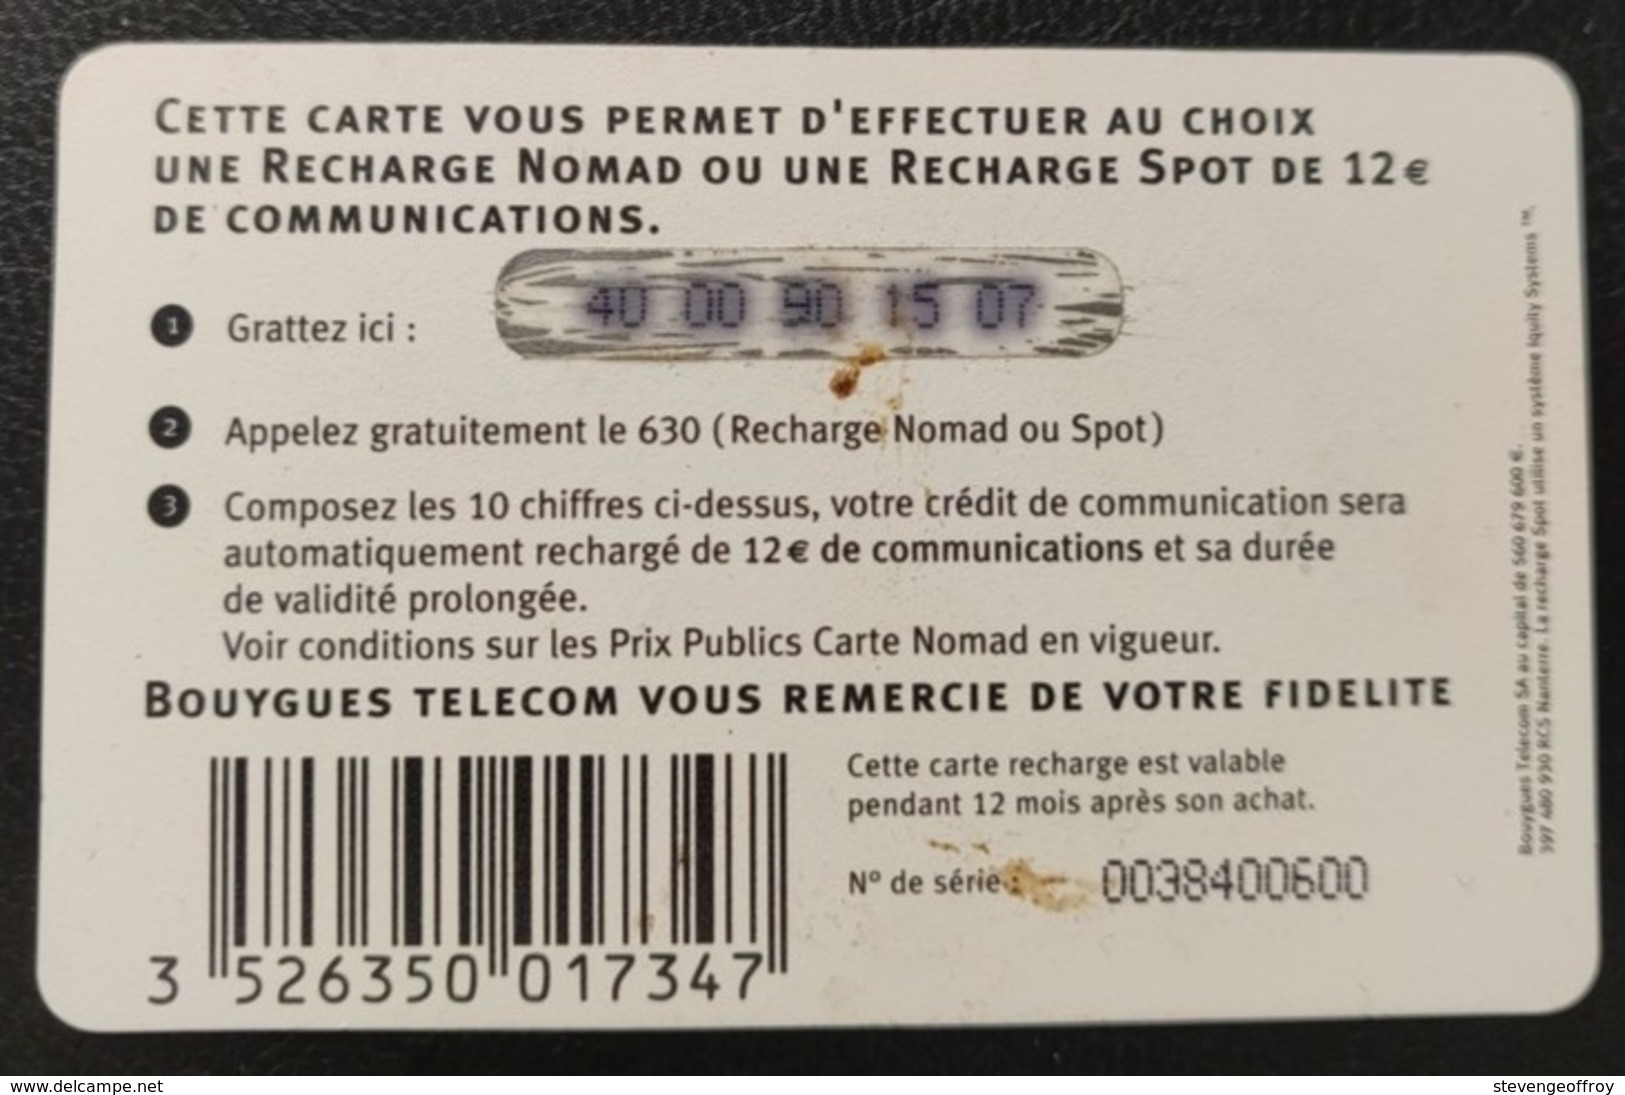 Telecarte France Promo Service Bouygues Bixente Lizarazu - Errors And Oddities